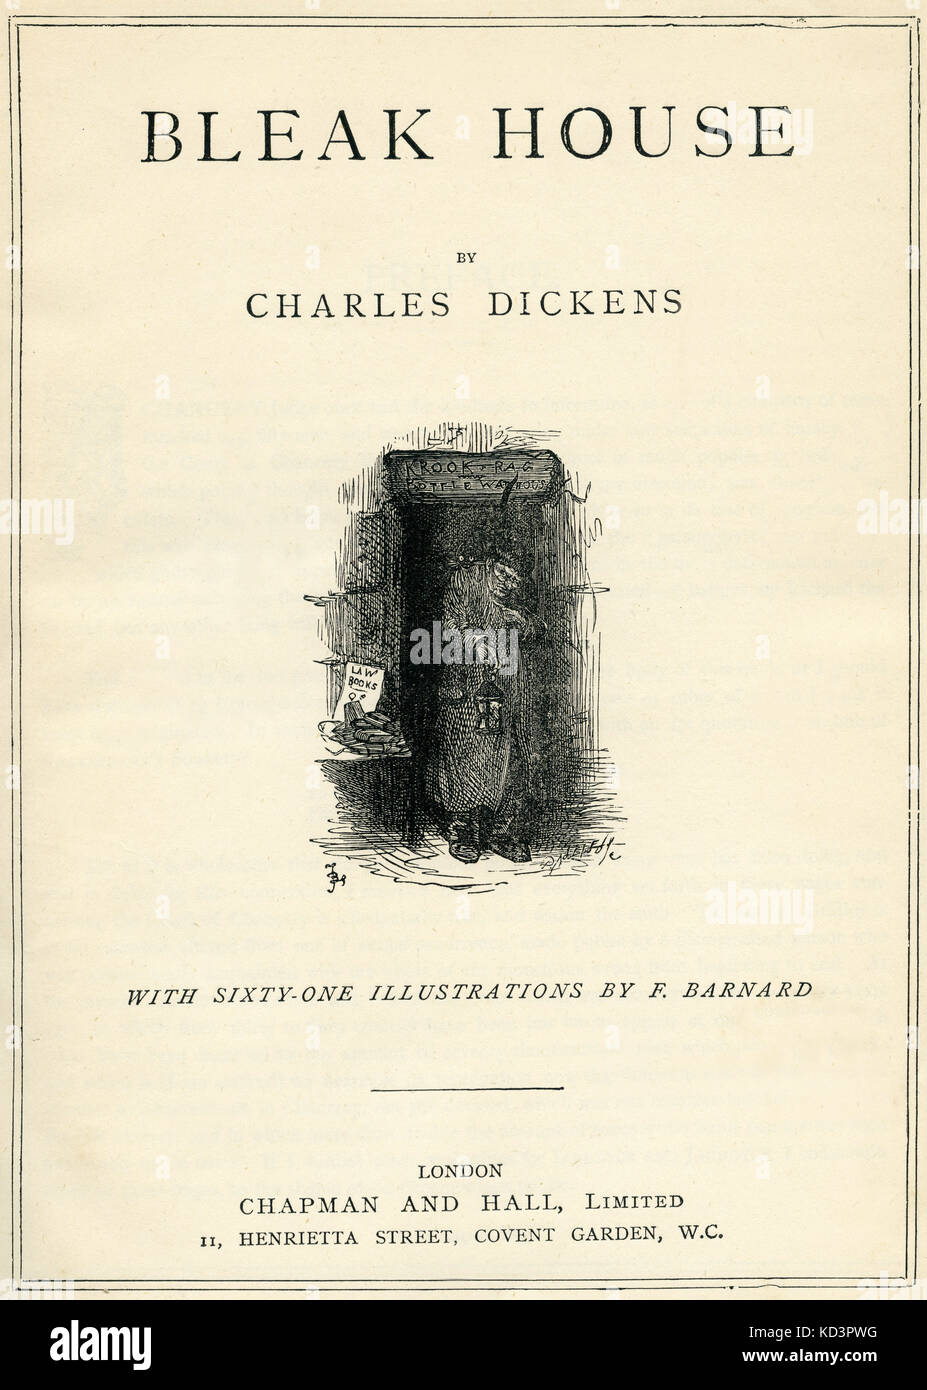 Casa sombría por Charles Dickens Página de título - novelista inglés, 7 de febrero de 1812 - 9 de junio de 1870. Ilustración de Frederick (Fred) Barnard . Londres . Chapman y Hall. Foto de stock